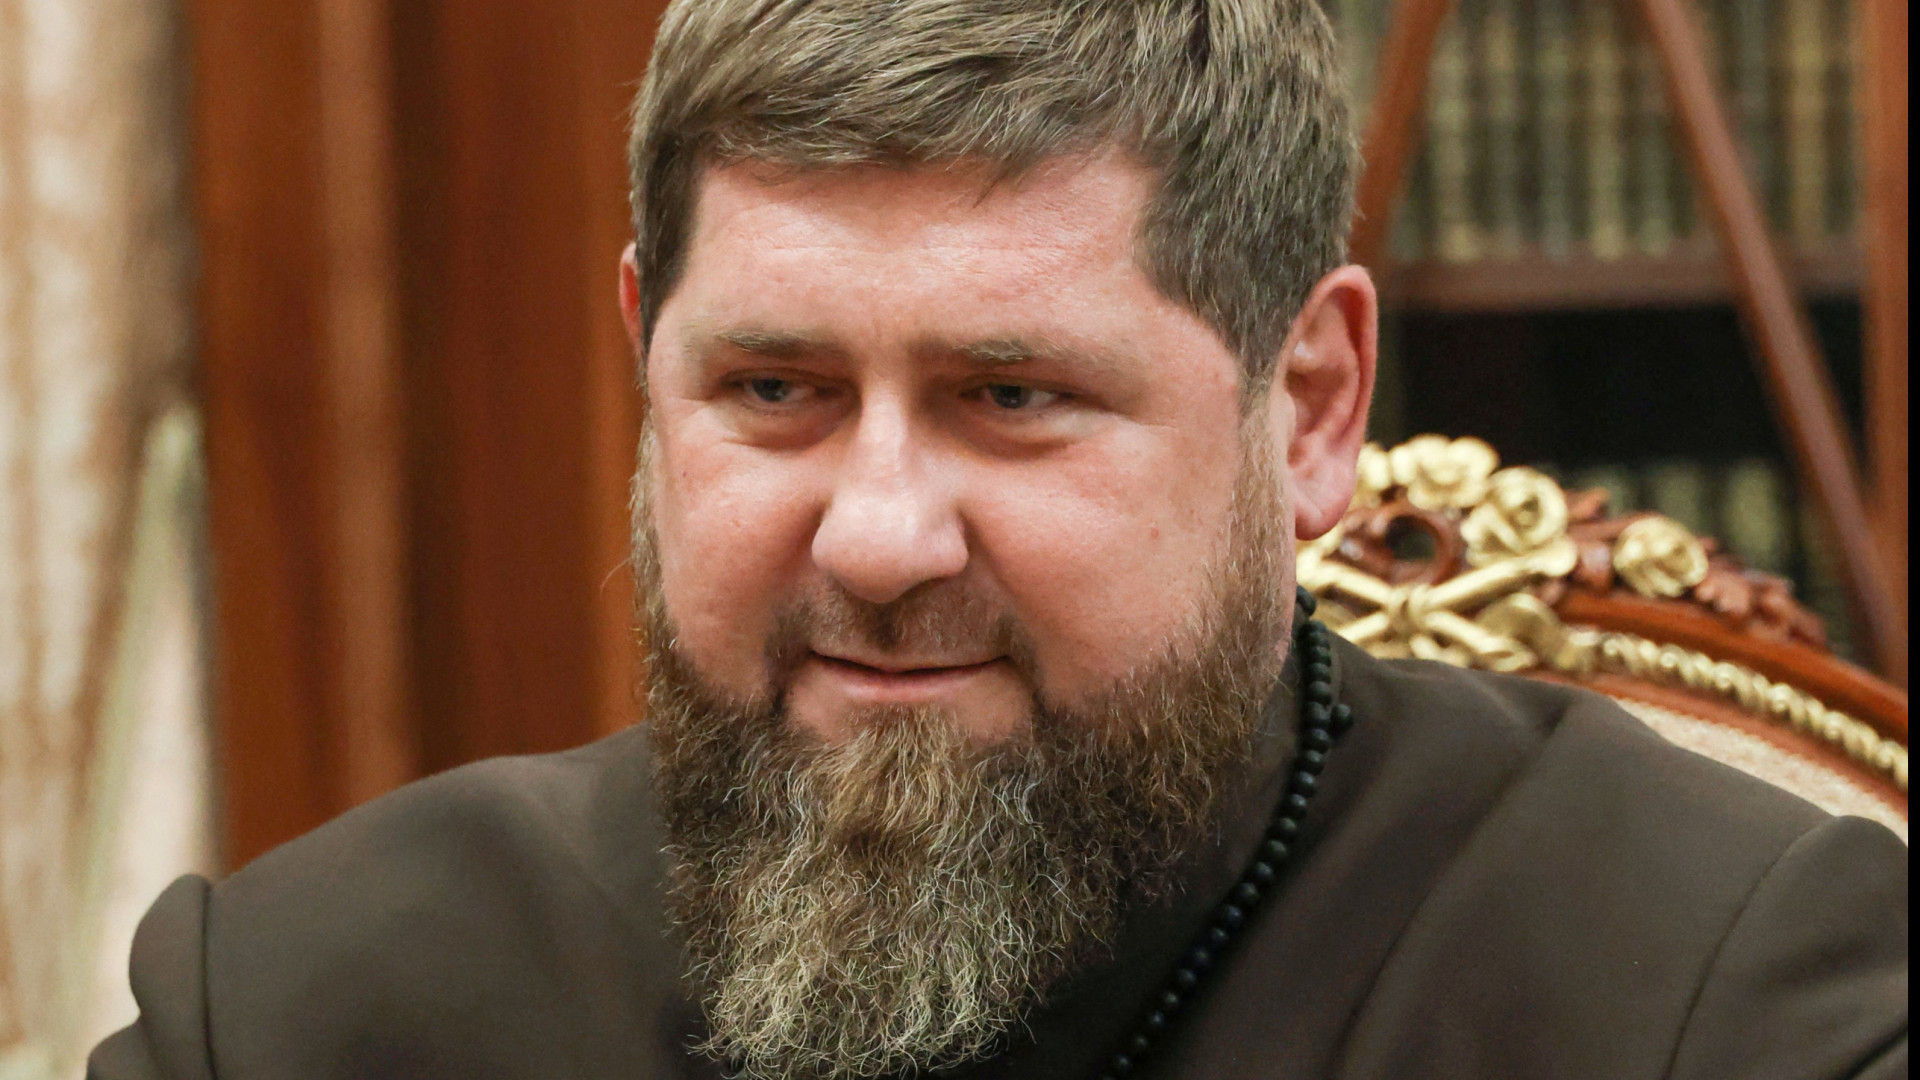 Kadyrov "orgulhoso" de filho por espancar prisioneiro que queimou Alcorão